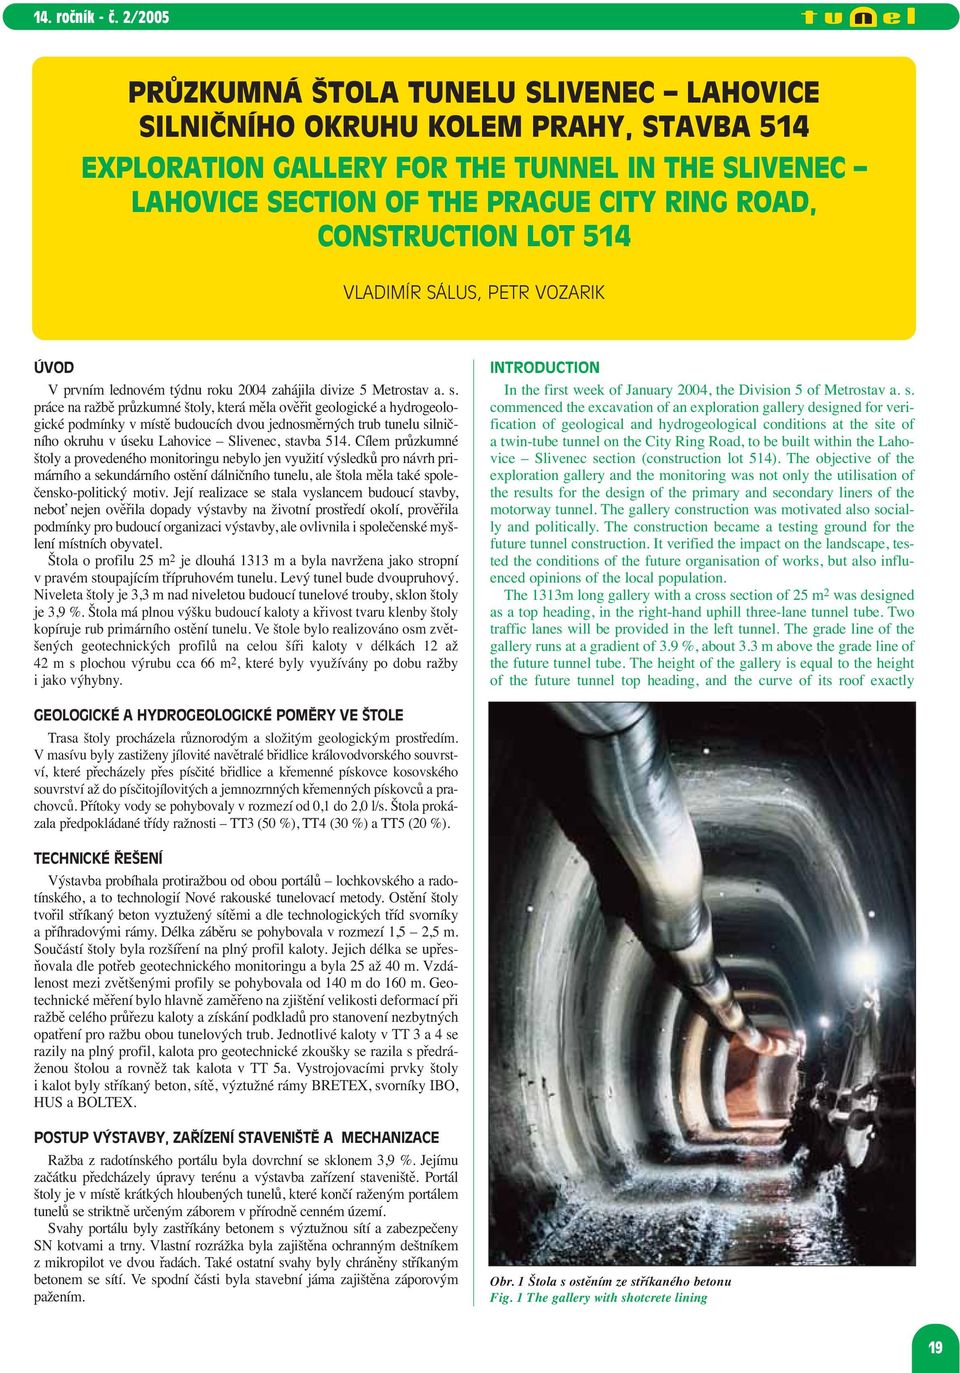 práce na ražbě průzkumné štoly, která měla ověřit geologické a hydrogeologické podmínky v místě budoucích dvou jednosměrných trub tunelu silničního okruhu v úseku Lahovice Slivenec, stavba 514.